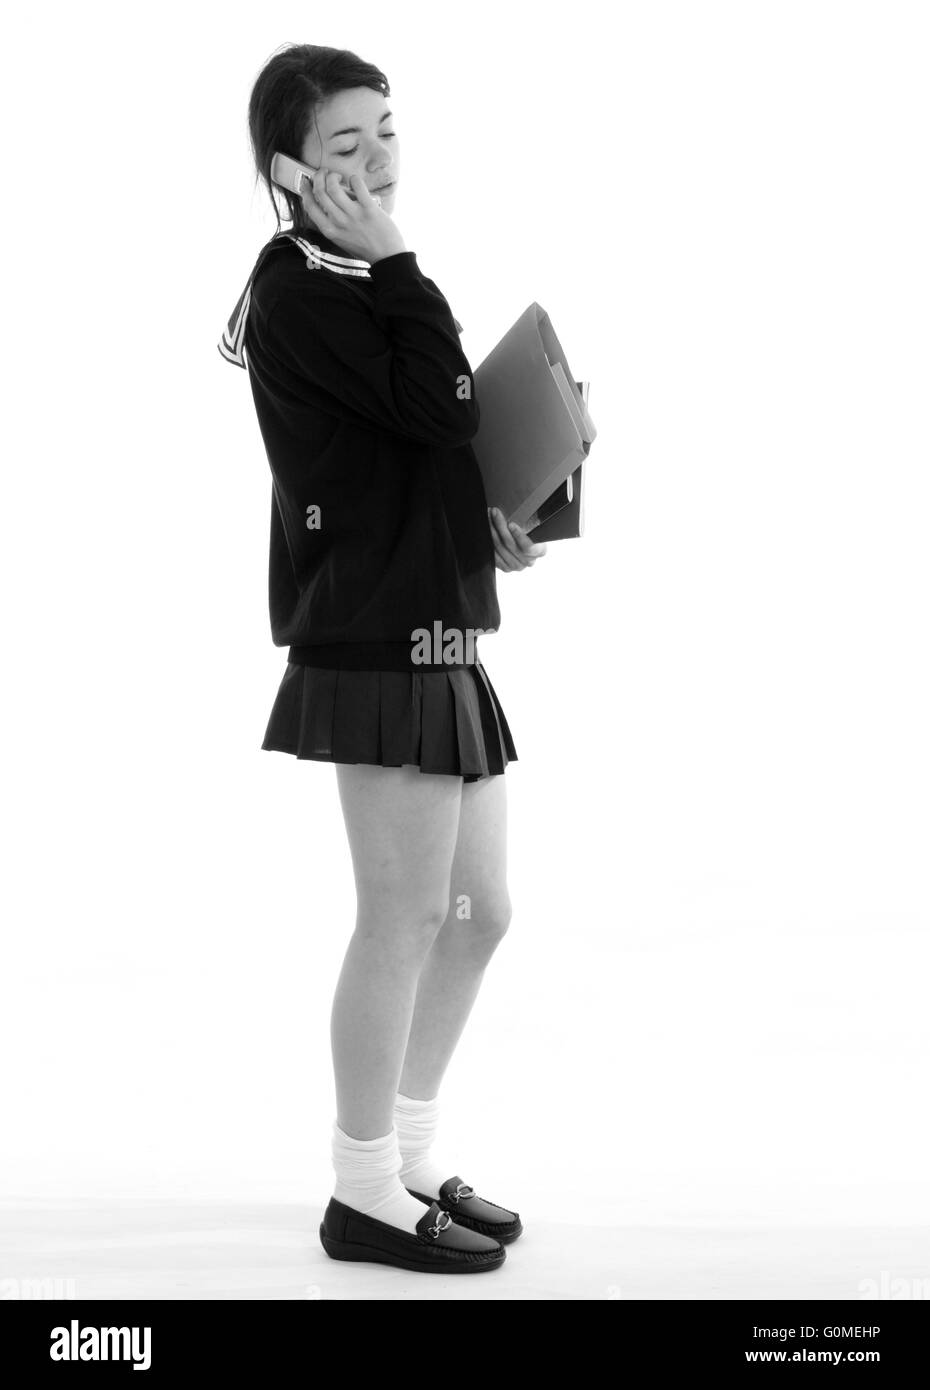 Mischlinge junge Frau in ein japanisches Schulmädchen Uniform gekleidet, mit einem sehr kurzen Rock tragen Bücher Stockfoto